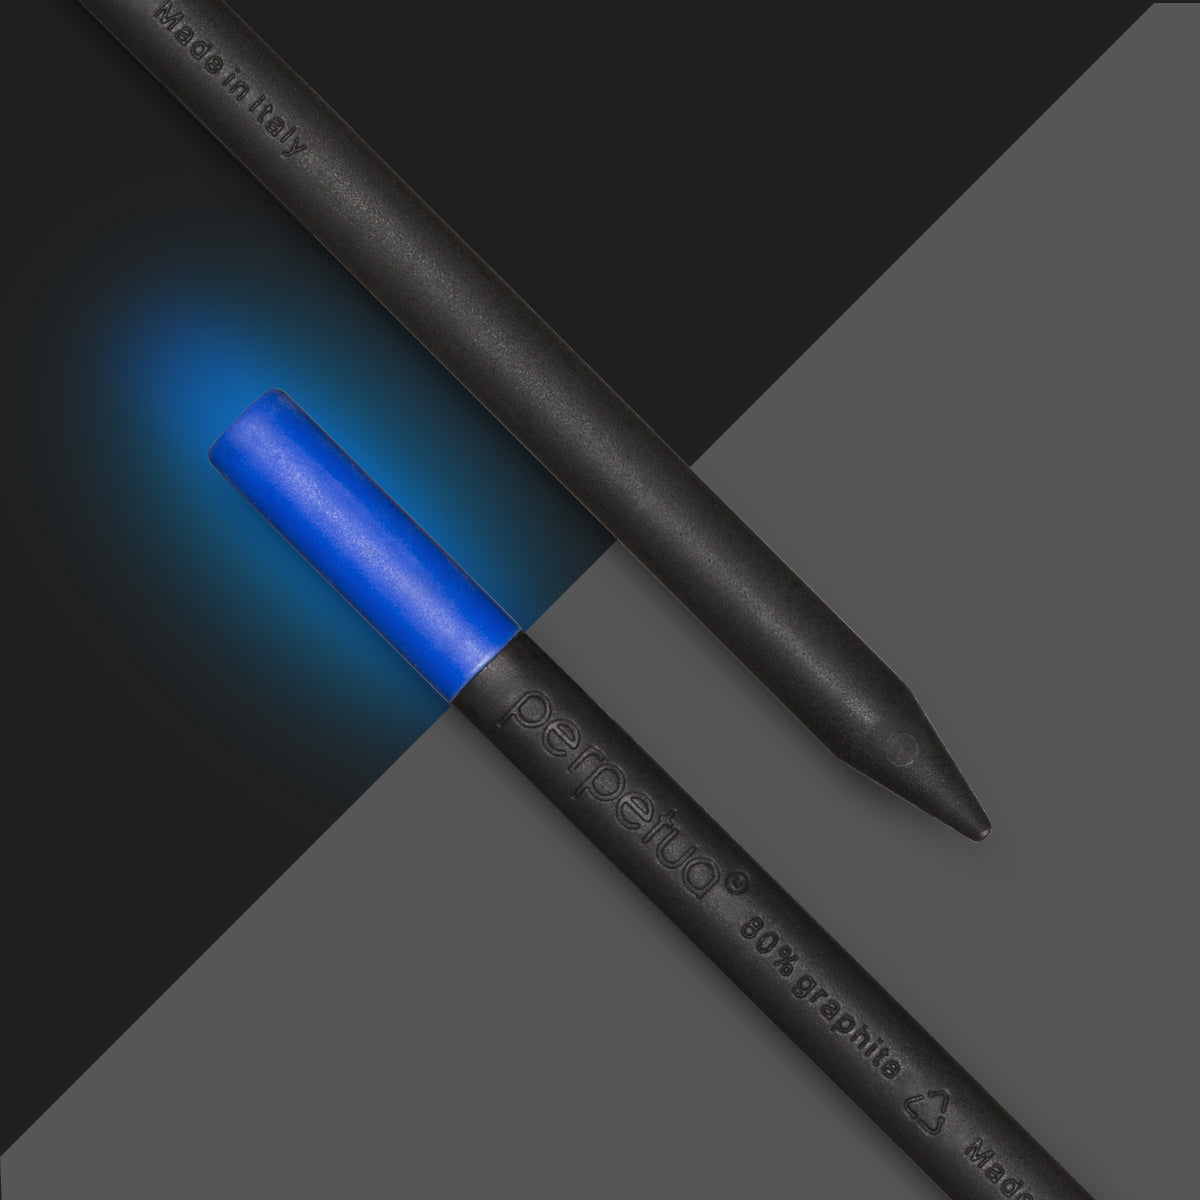 Perpetua - The Lumina Pencil Perpetua